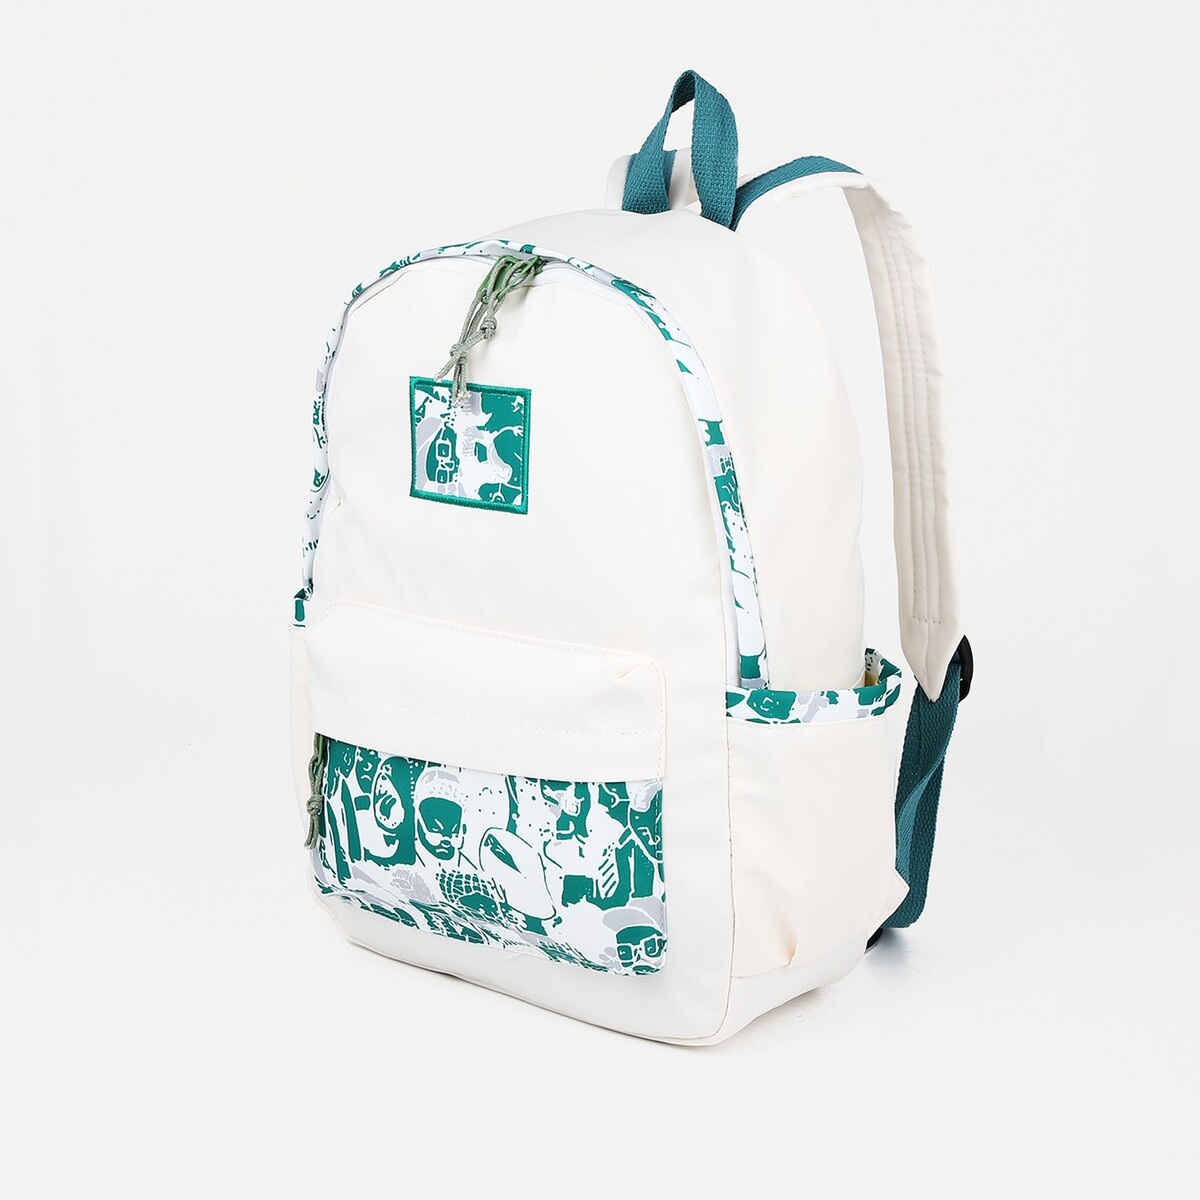 Рюкзак молодежный из текстиля, 4 кармана, цвет белый/зеленый